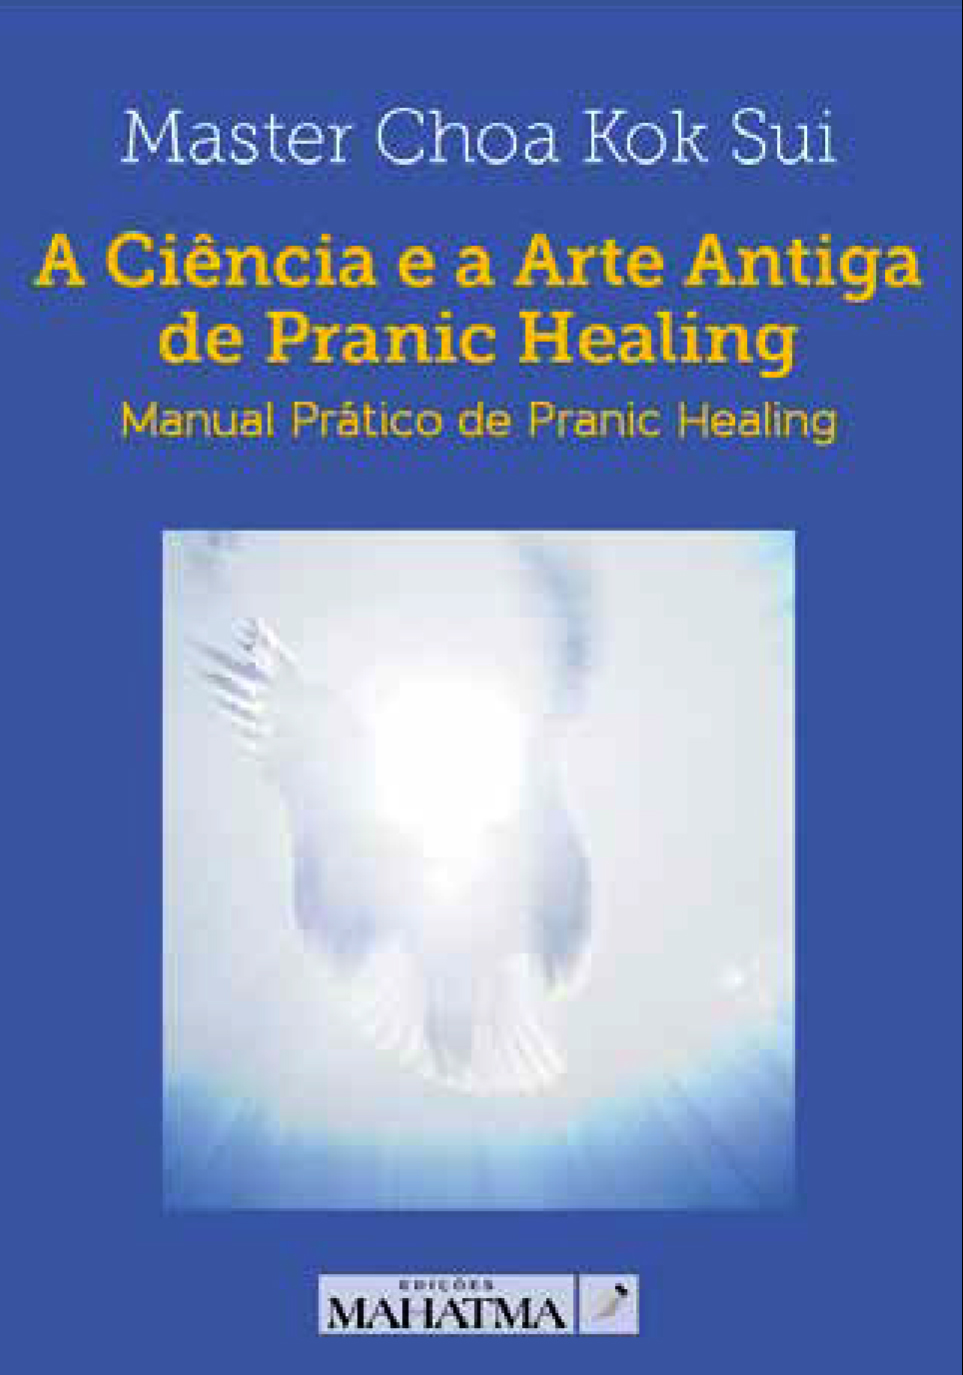 A Ciência e a Arte Antiga de Pranic Healing